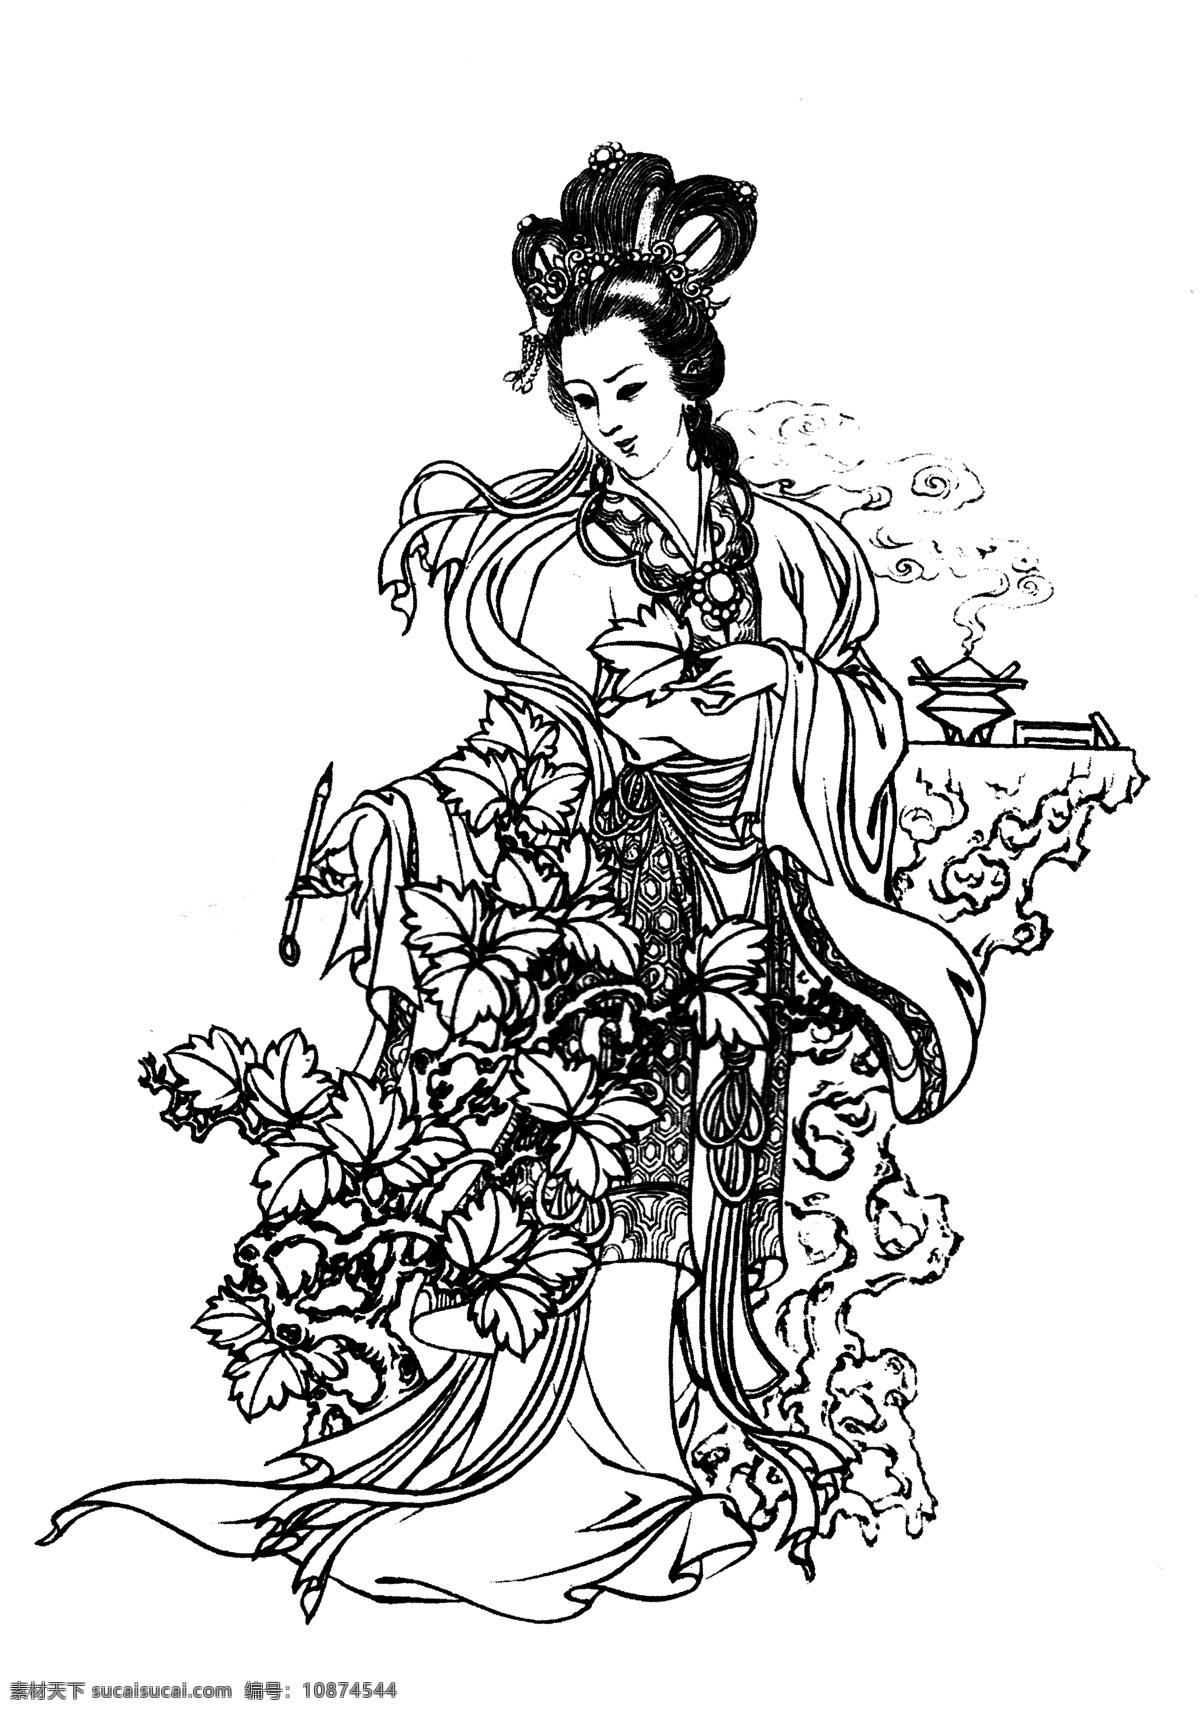 红叶题诗 白描 图案 绘画 古典 传统纹样 人物 神话传说 仕女 传统文化 文化艺术